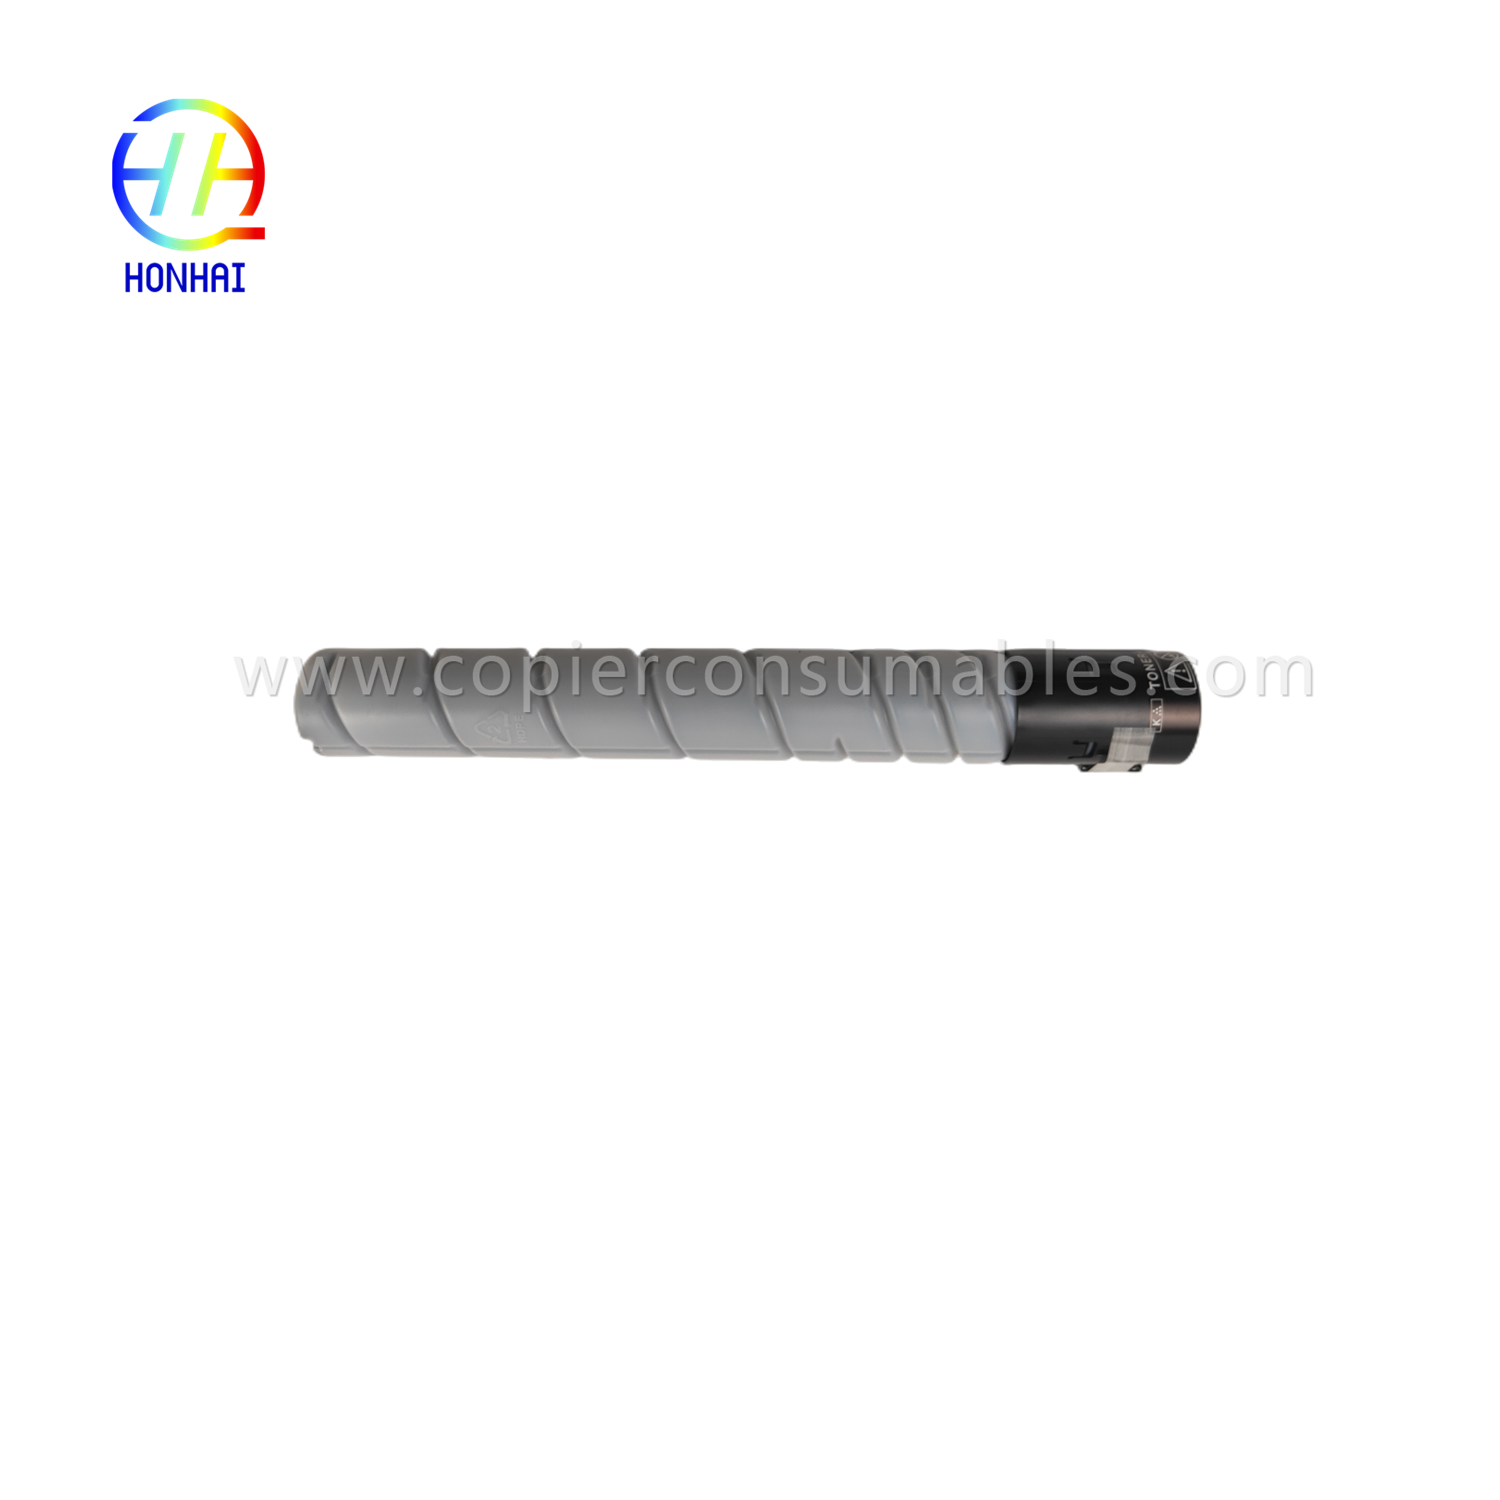 Toner Cartridge Black for Konica Minolta TN323 Bizhub C227  C287 C367 (1)